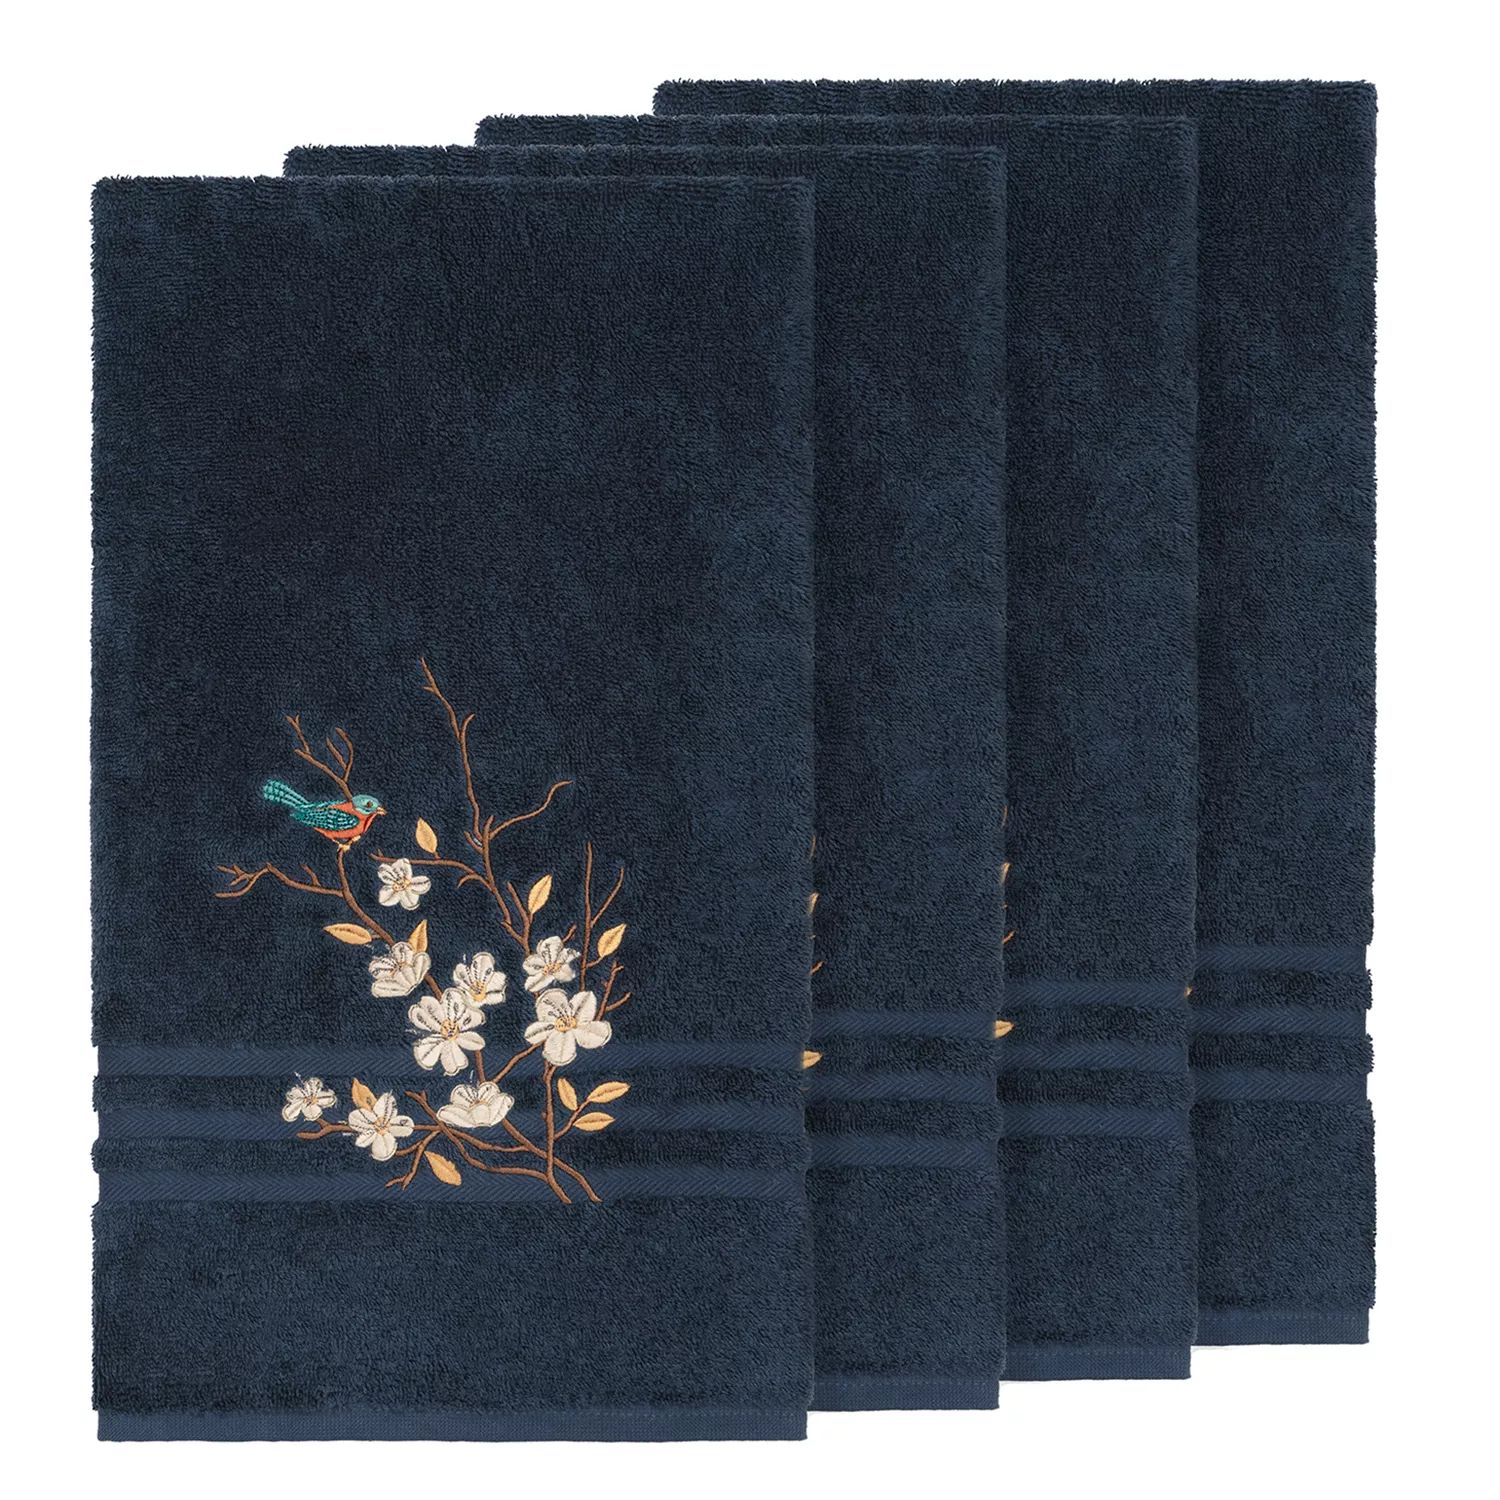 Linum Домашний текстиль Турецкий хлопок Весенний украшенный набор банных полотенец, синий